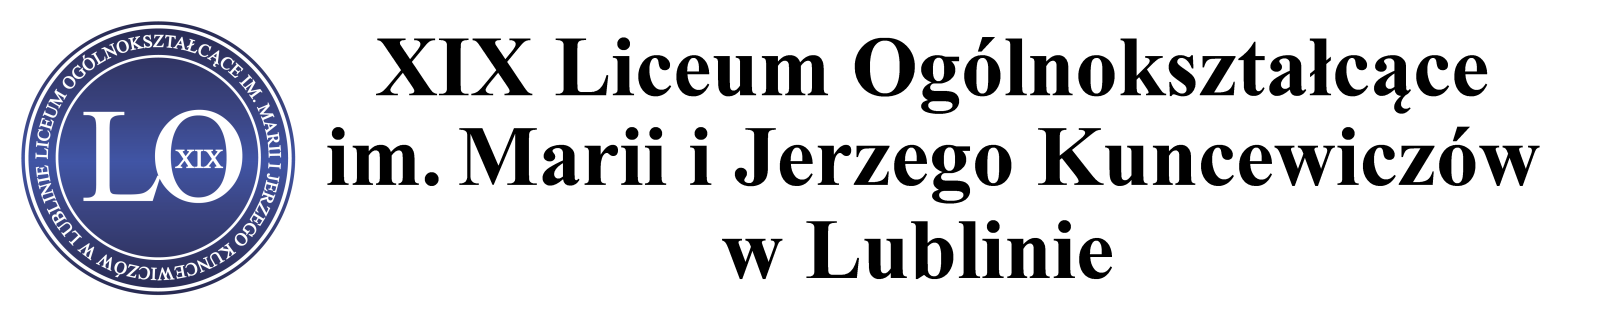 XIX Liceum Ogólnokształcące w Lublinie